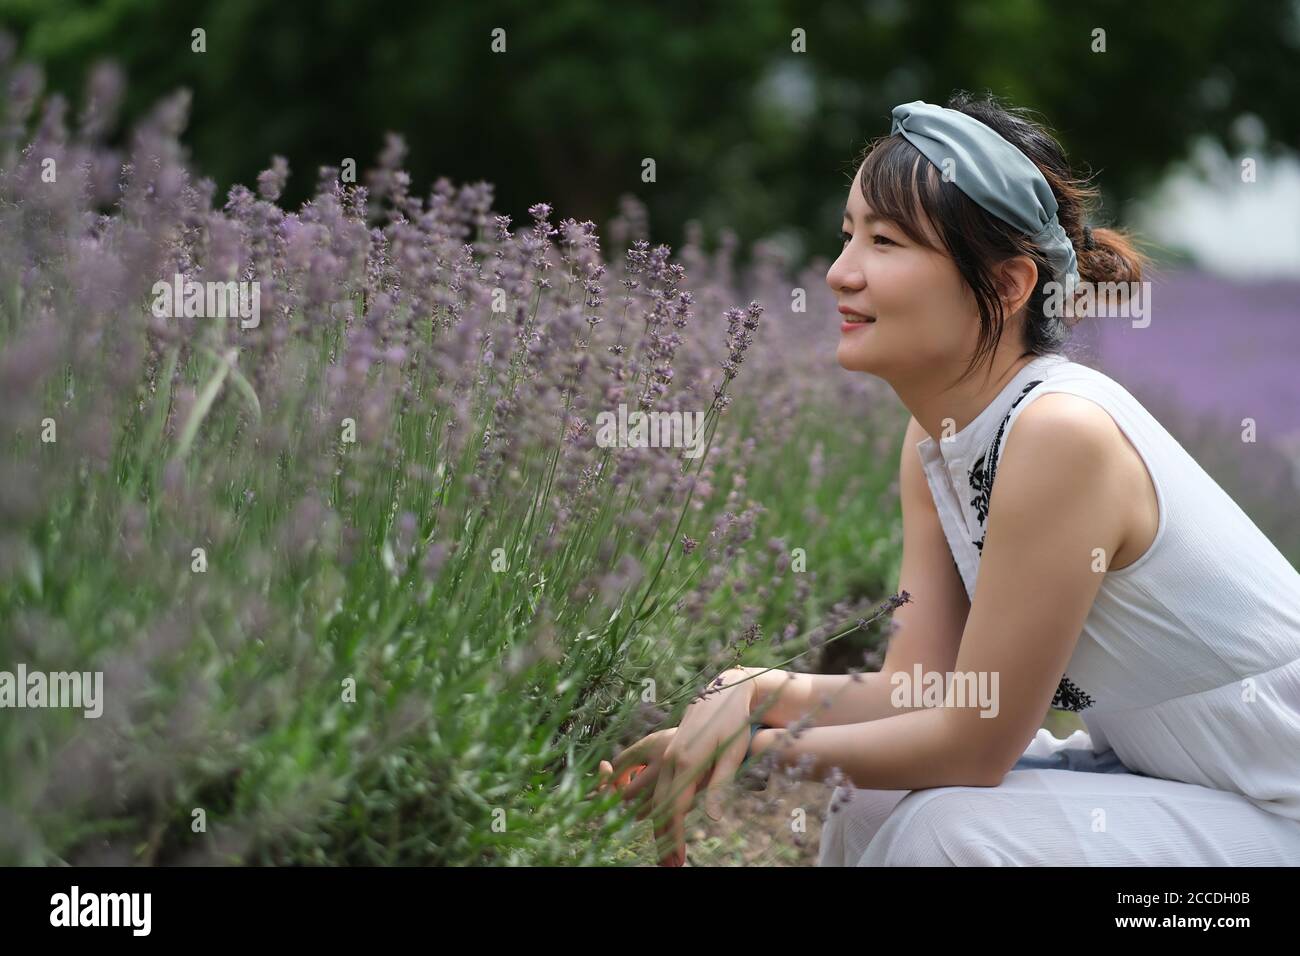 Une belle jeune femme asiatique se disputant dans un brousse de lavande, souriant. Arrière-plan flou Banque D'Images